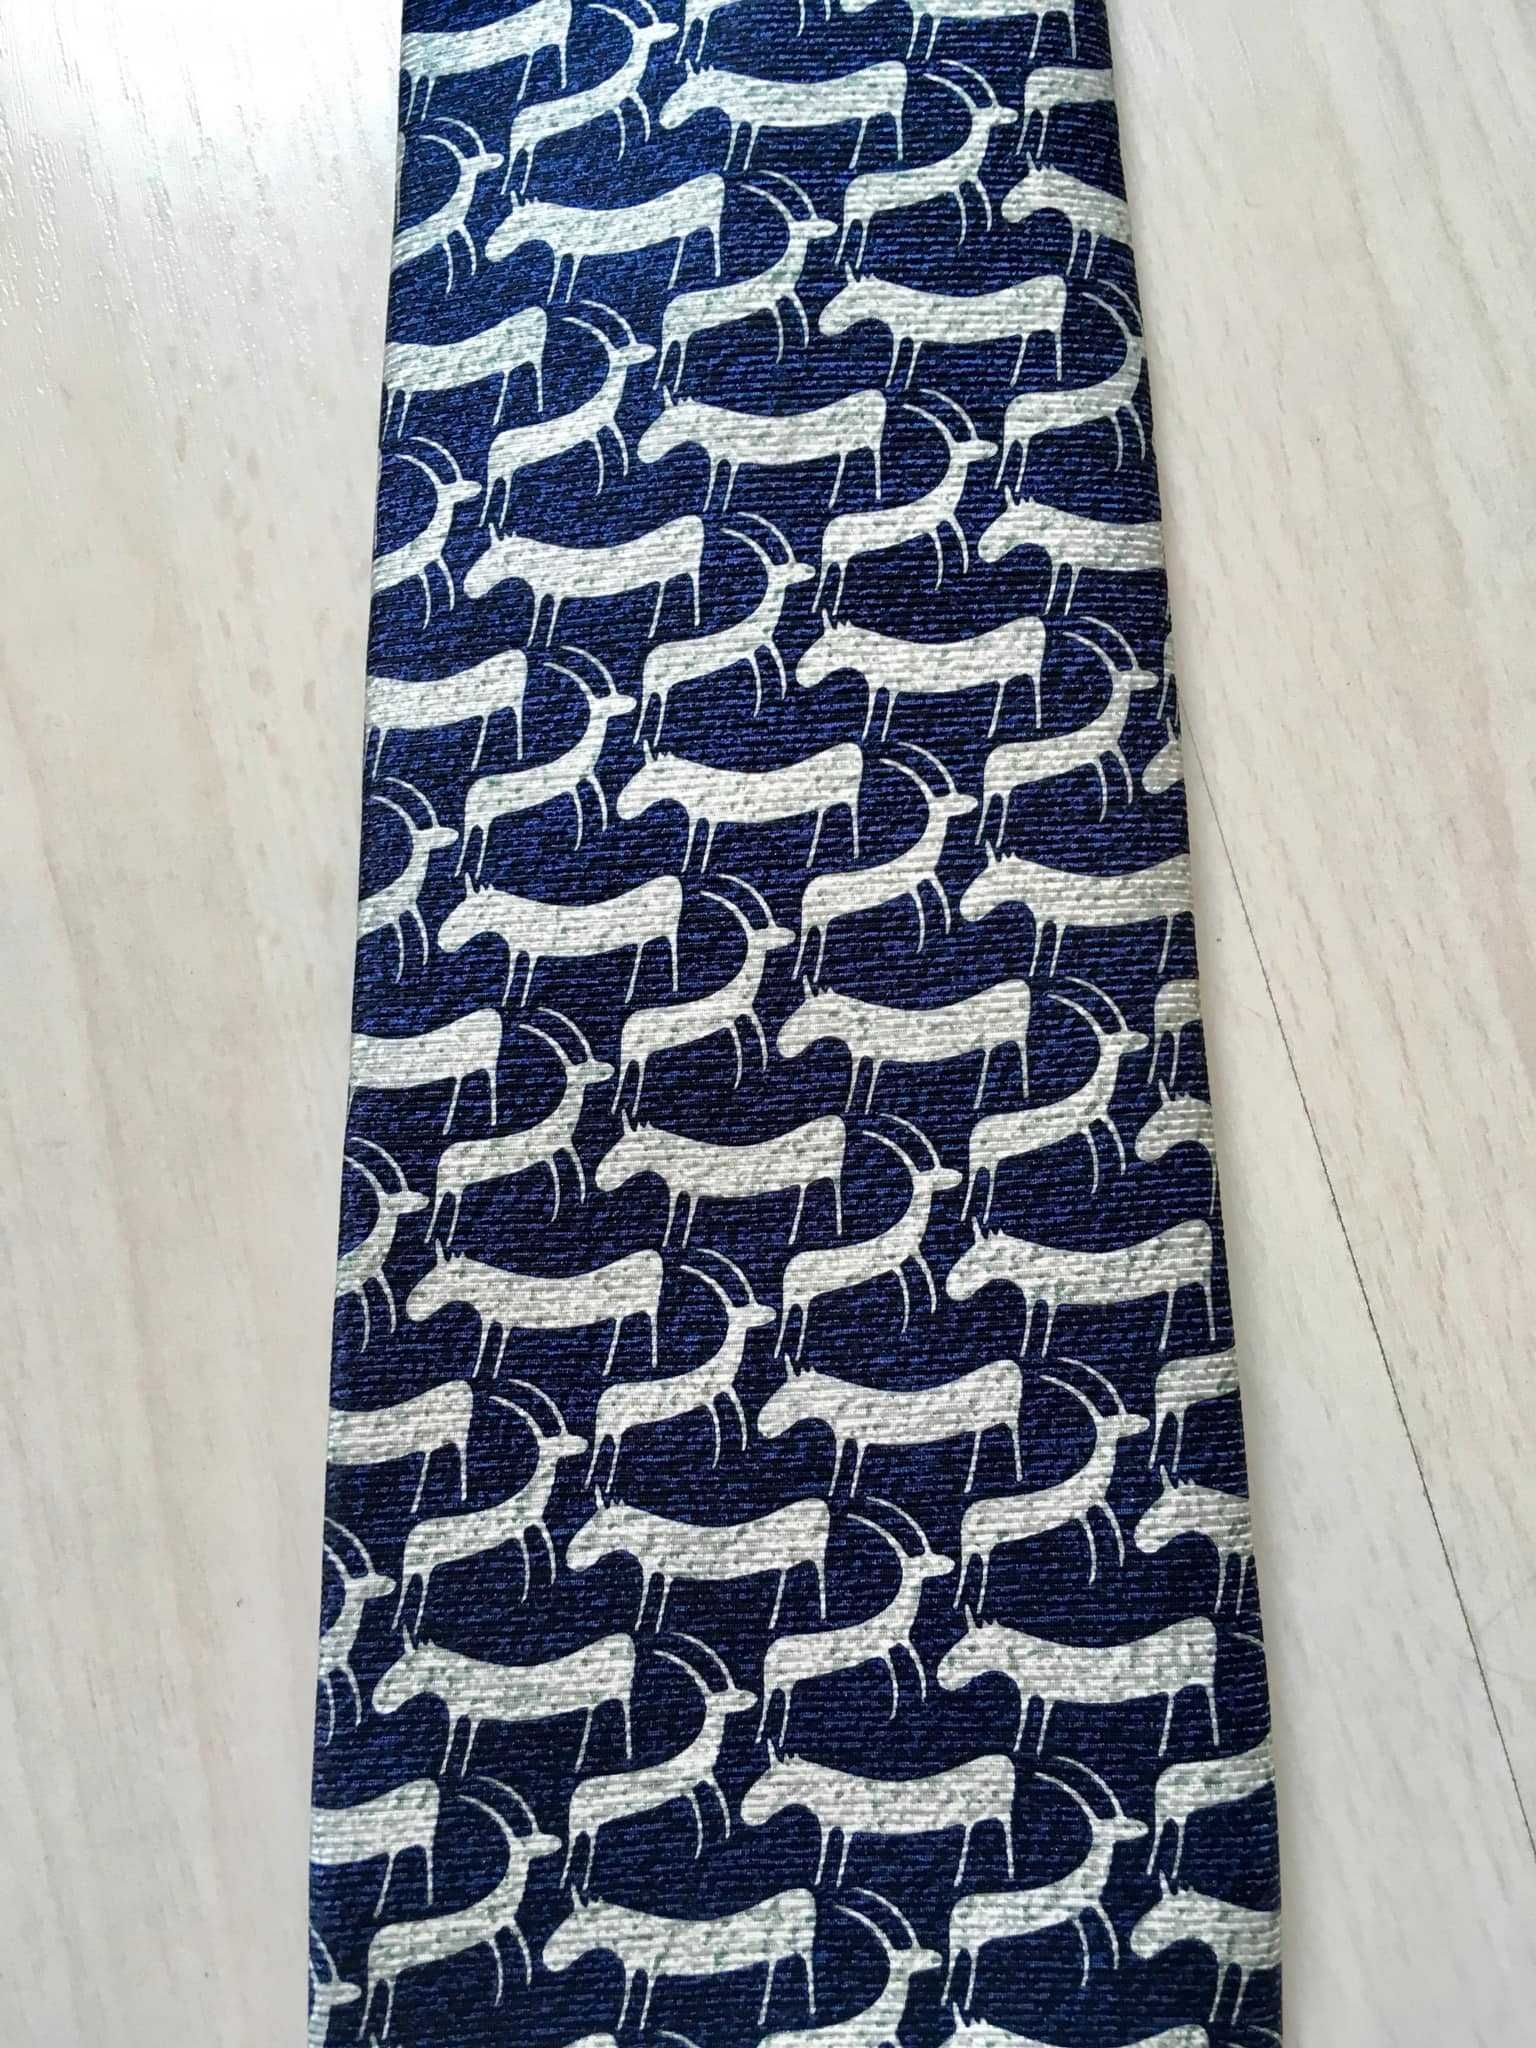 Cravată  Bvulgari, 100% mătase, lucrată manual